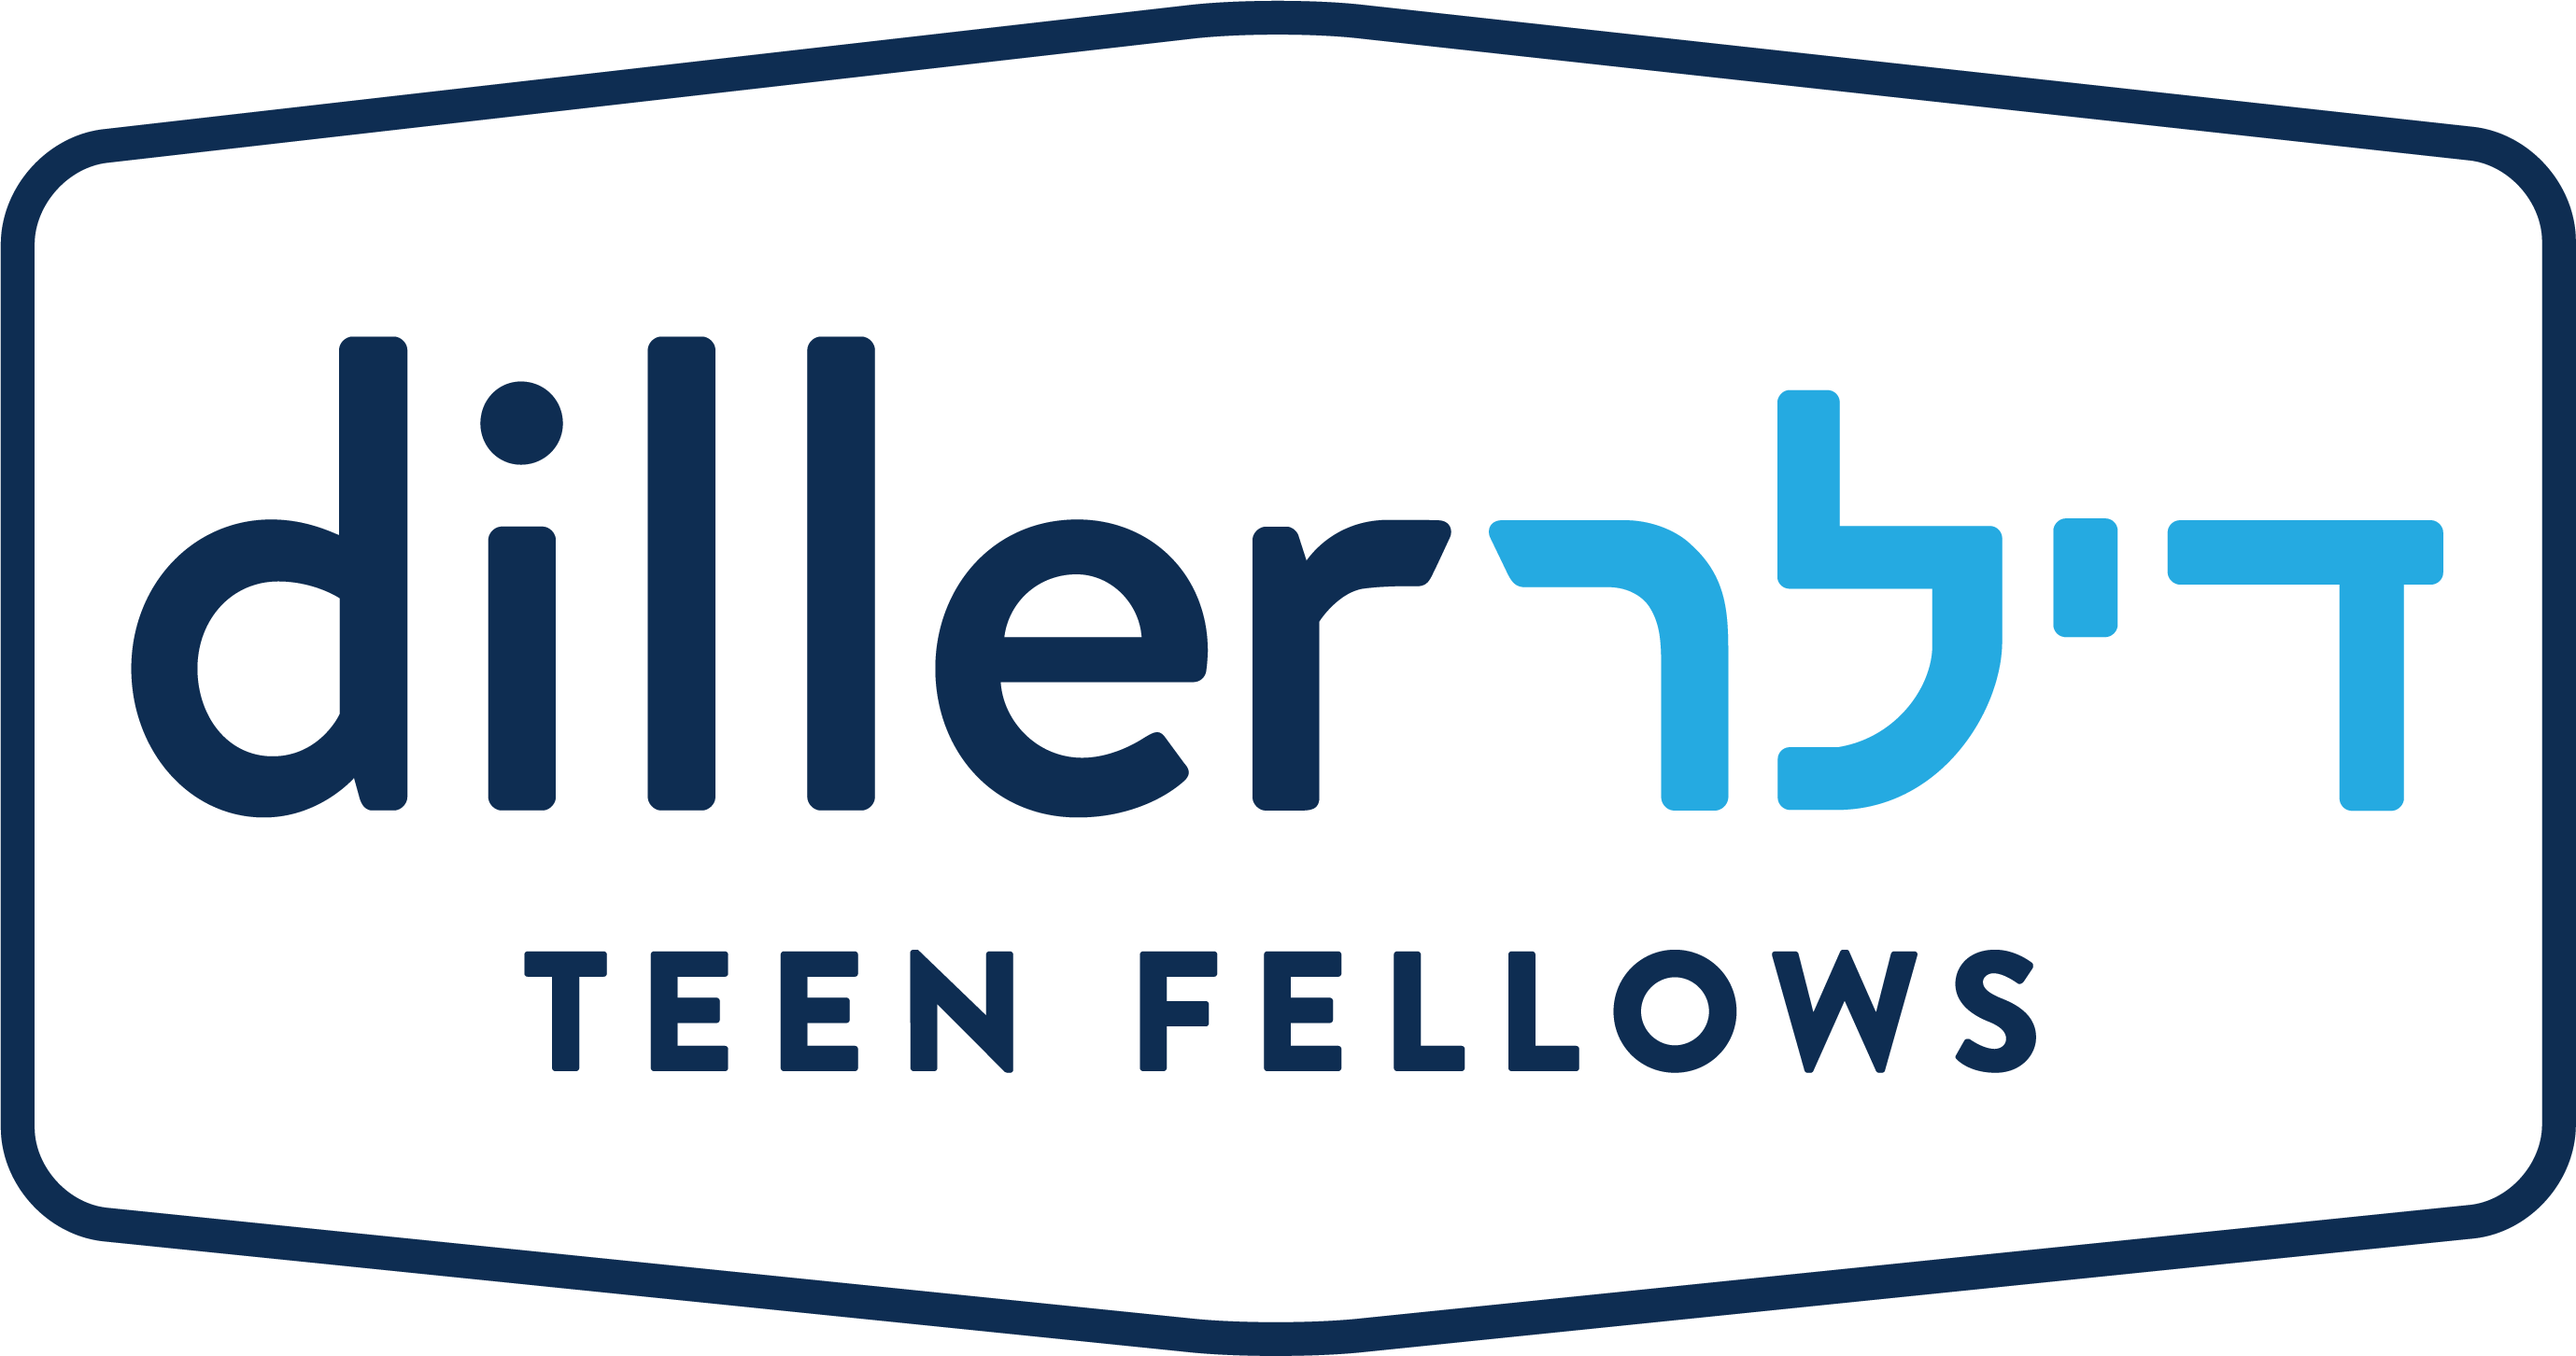 Diller Teen Fellows Program